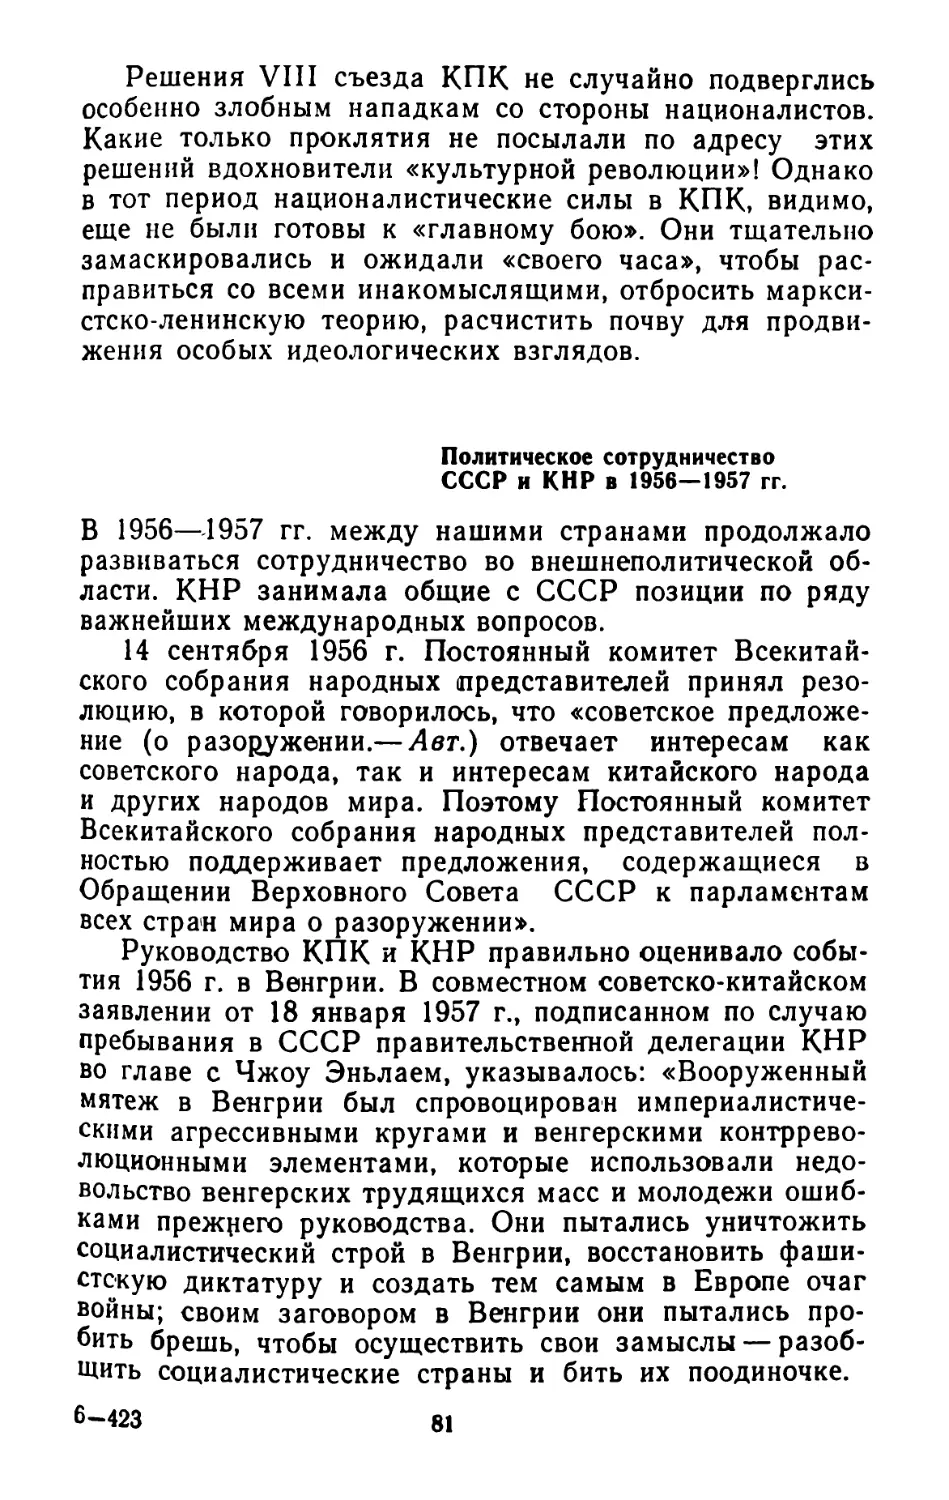 Политическое сотрудничество СССР и КНР в 1956— 1957 гг